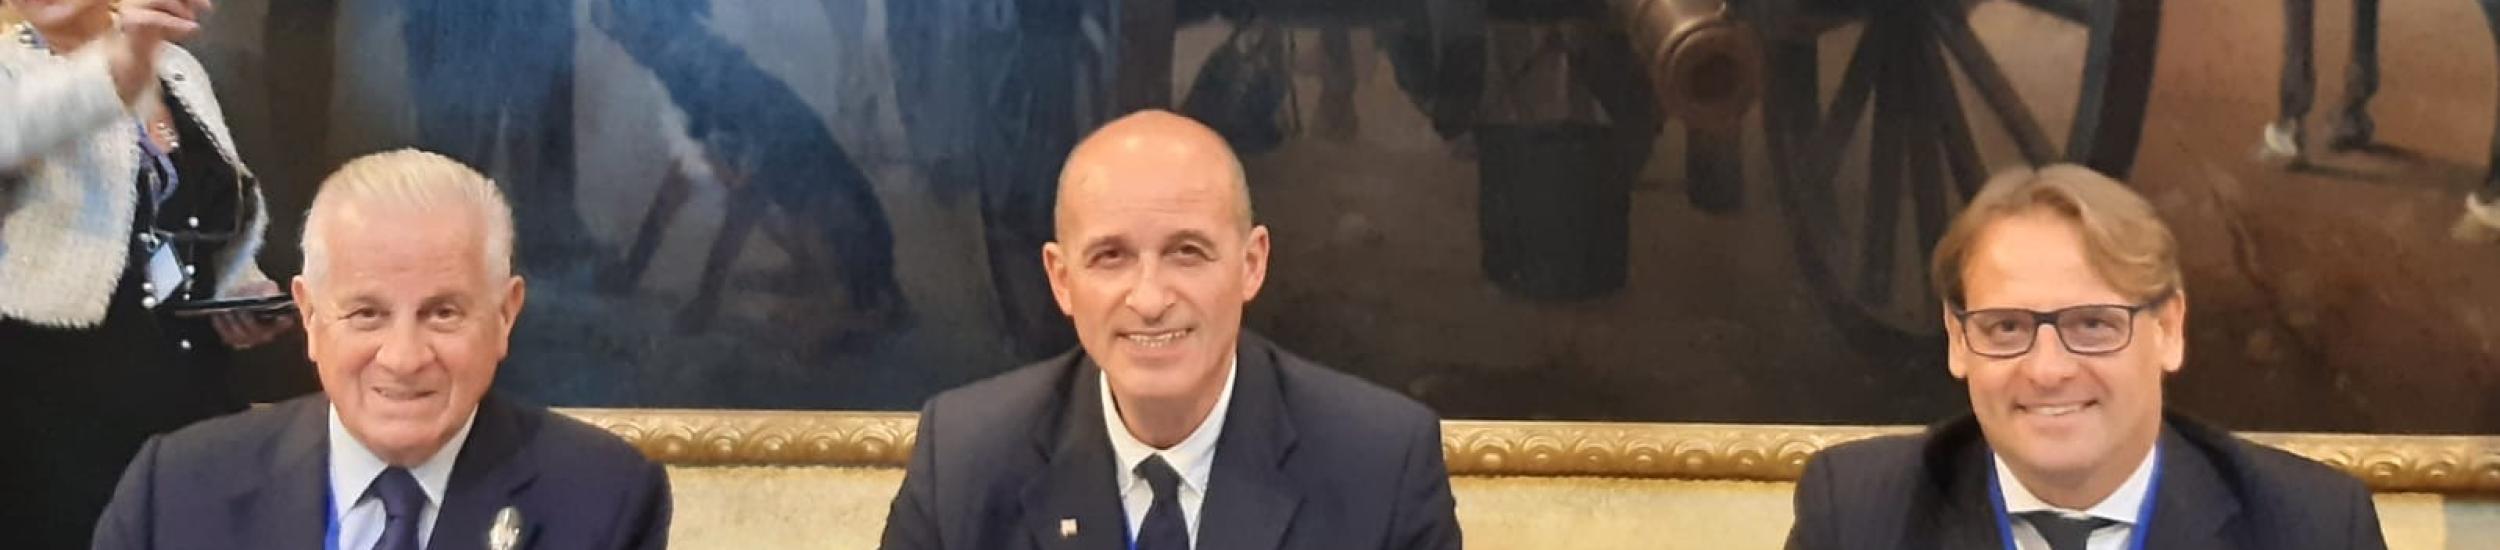 Claudio garbarino con Scajola all'incontro di cooperazione italia-francia